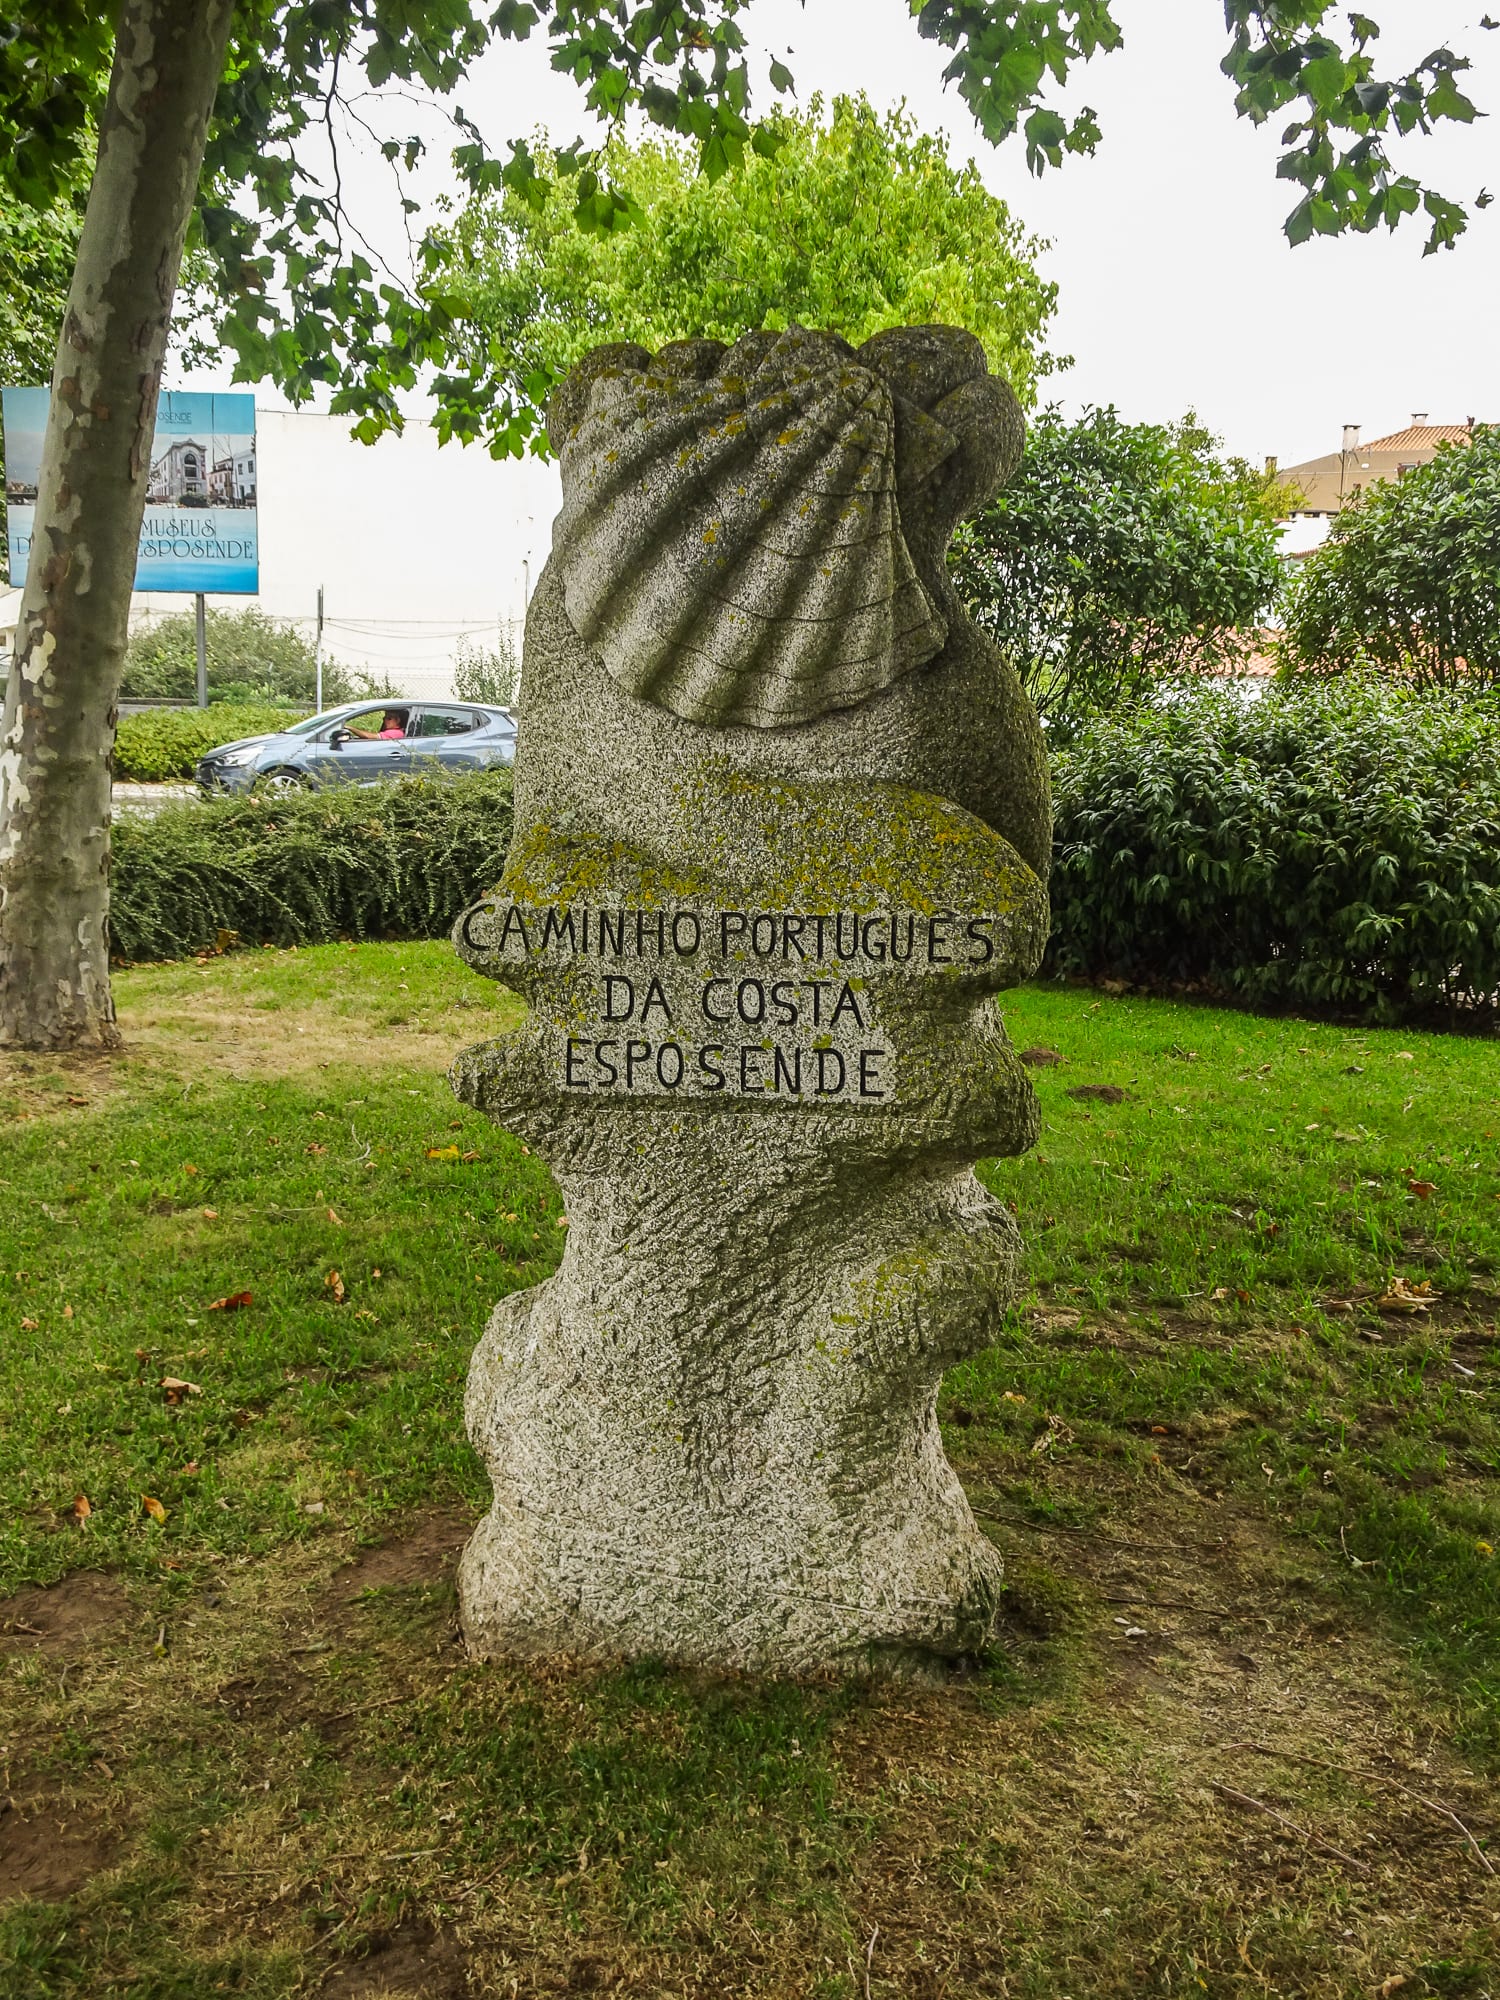 Denkmal Caminho Português da Costa in Esposende